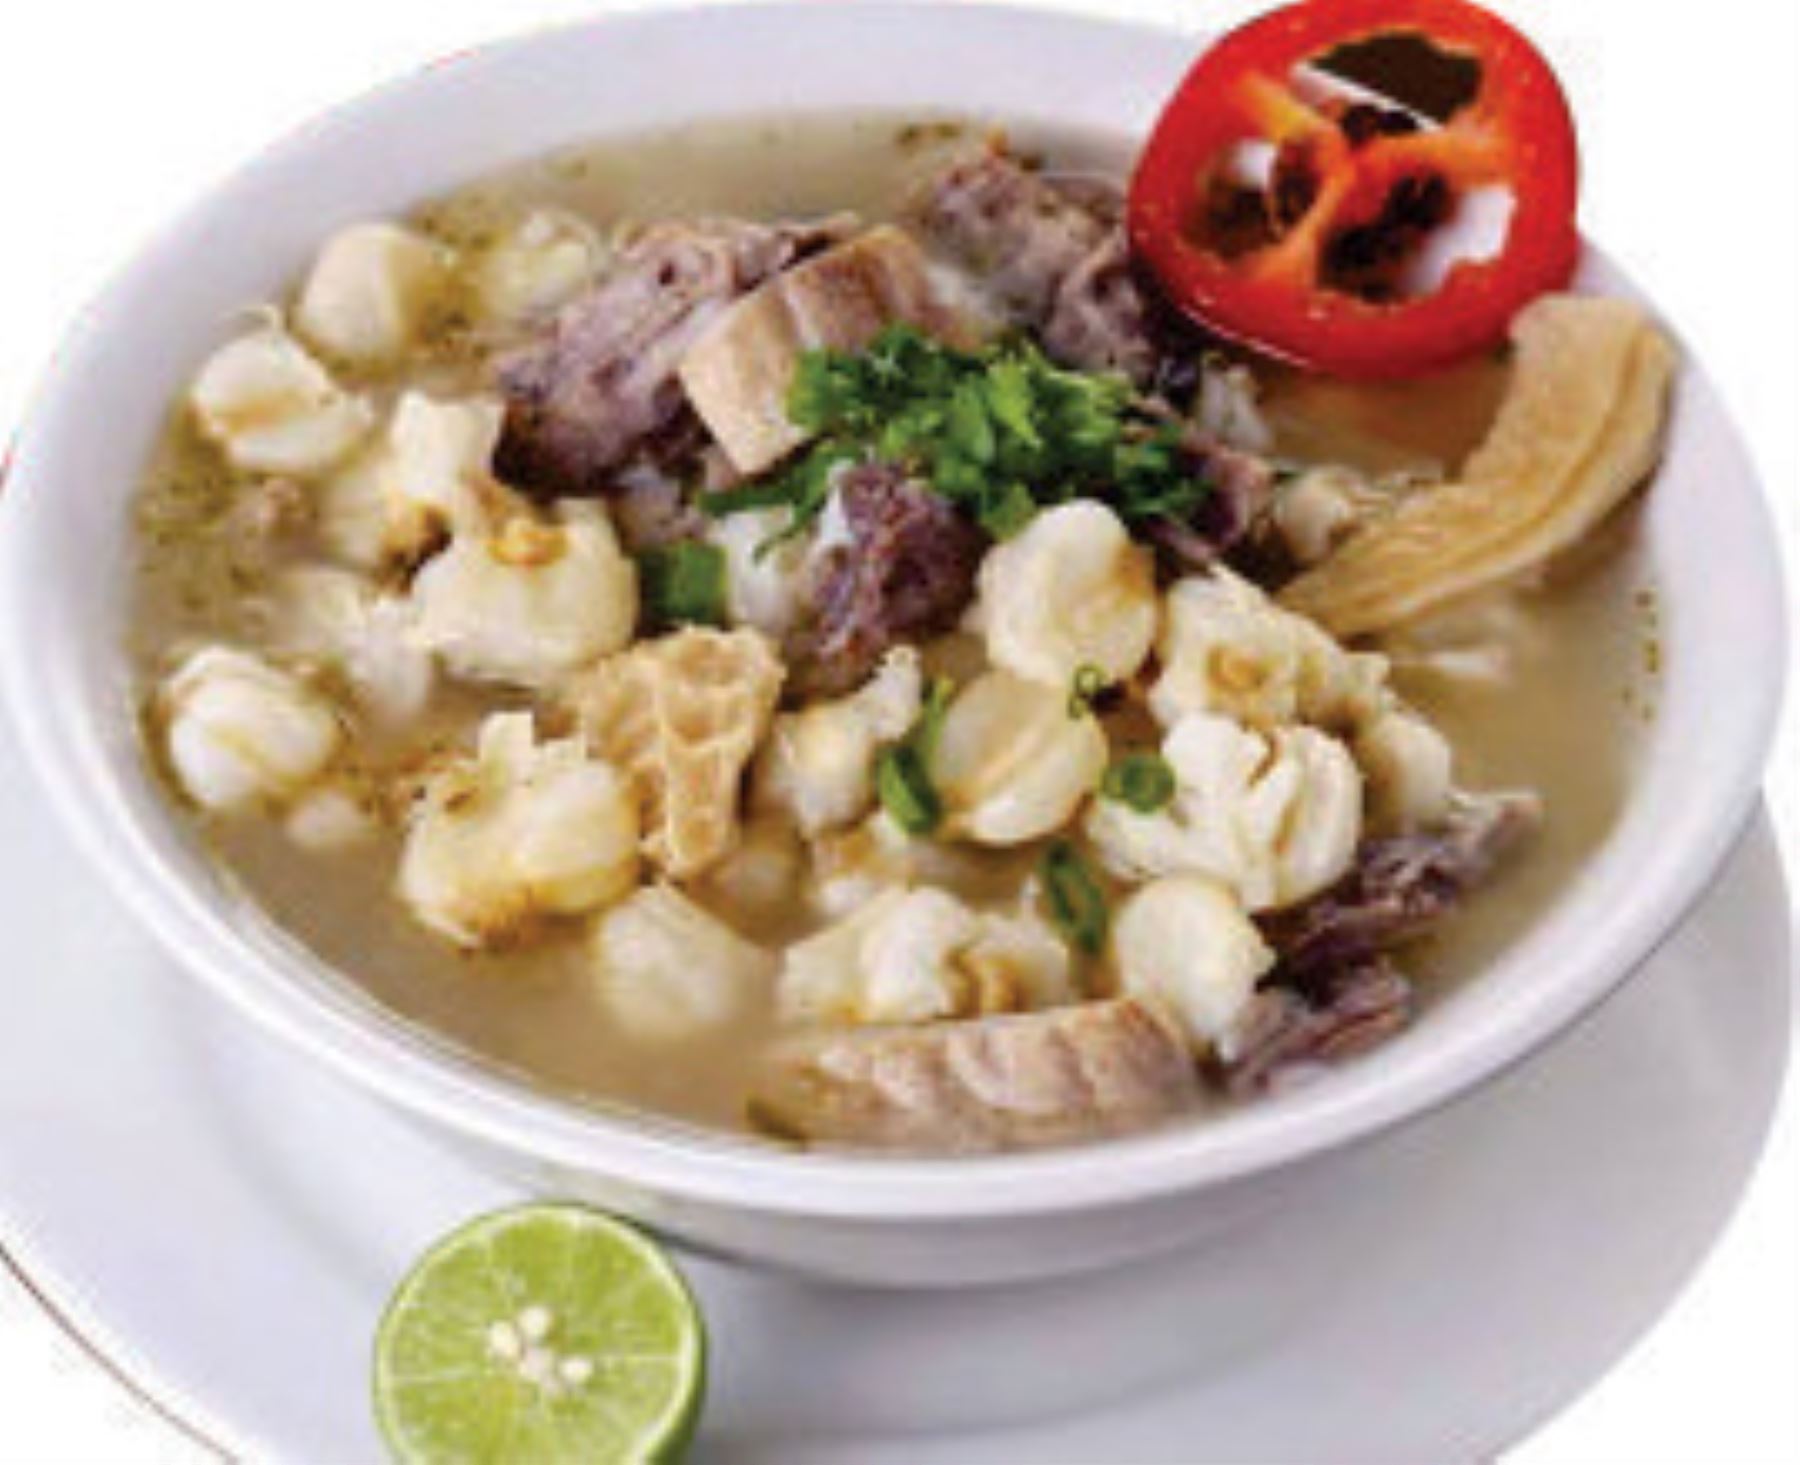 sopa es un plato tradicional y emblemático de la sierra central y se prepara con dos superalimentos: el mote y el ají verde, conocido también como ají amarillo o ají escabeche. ANDINA/Difusión